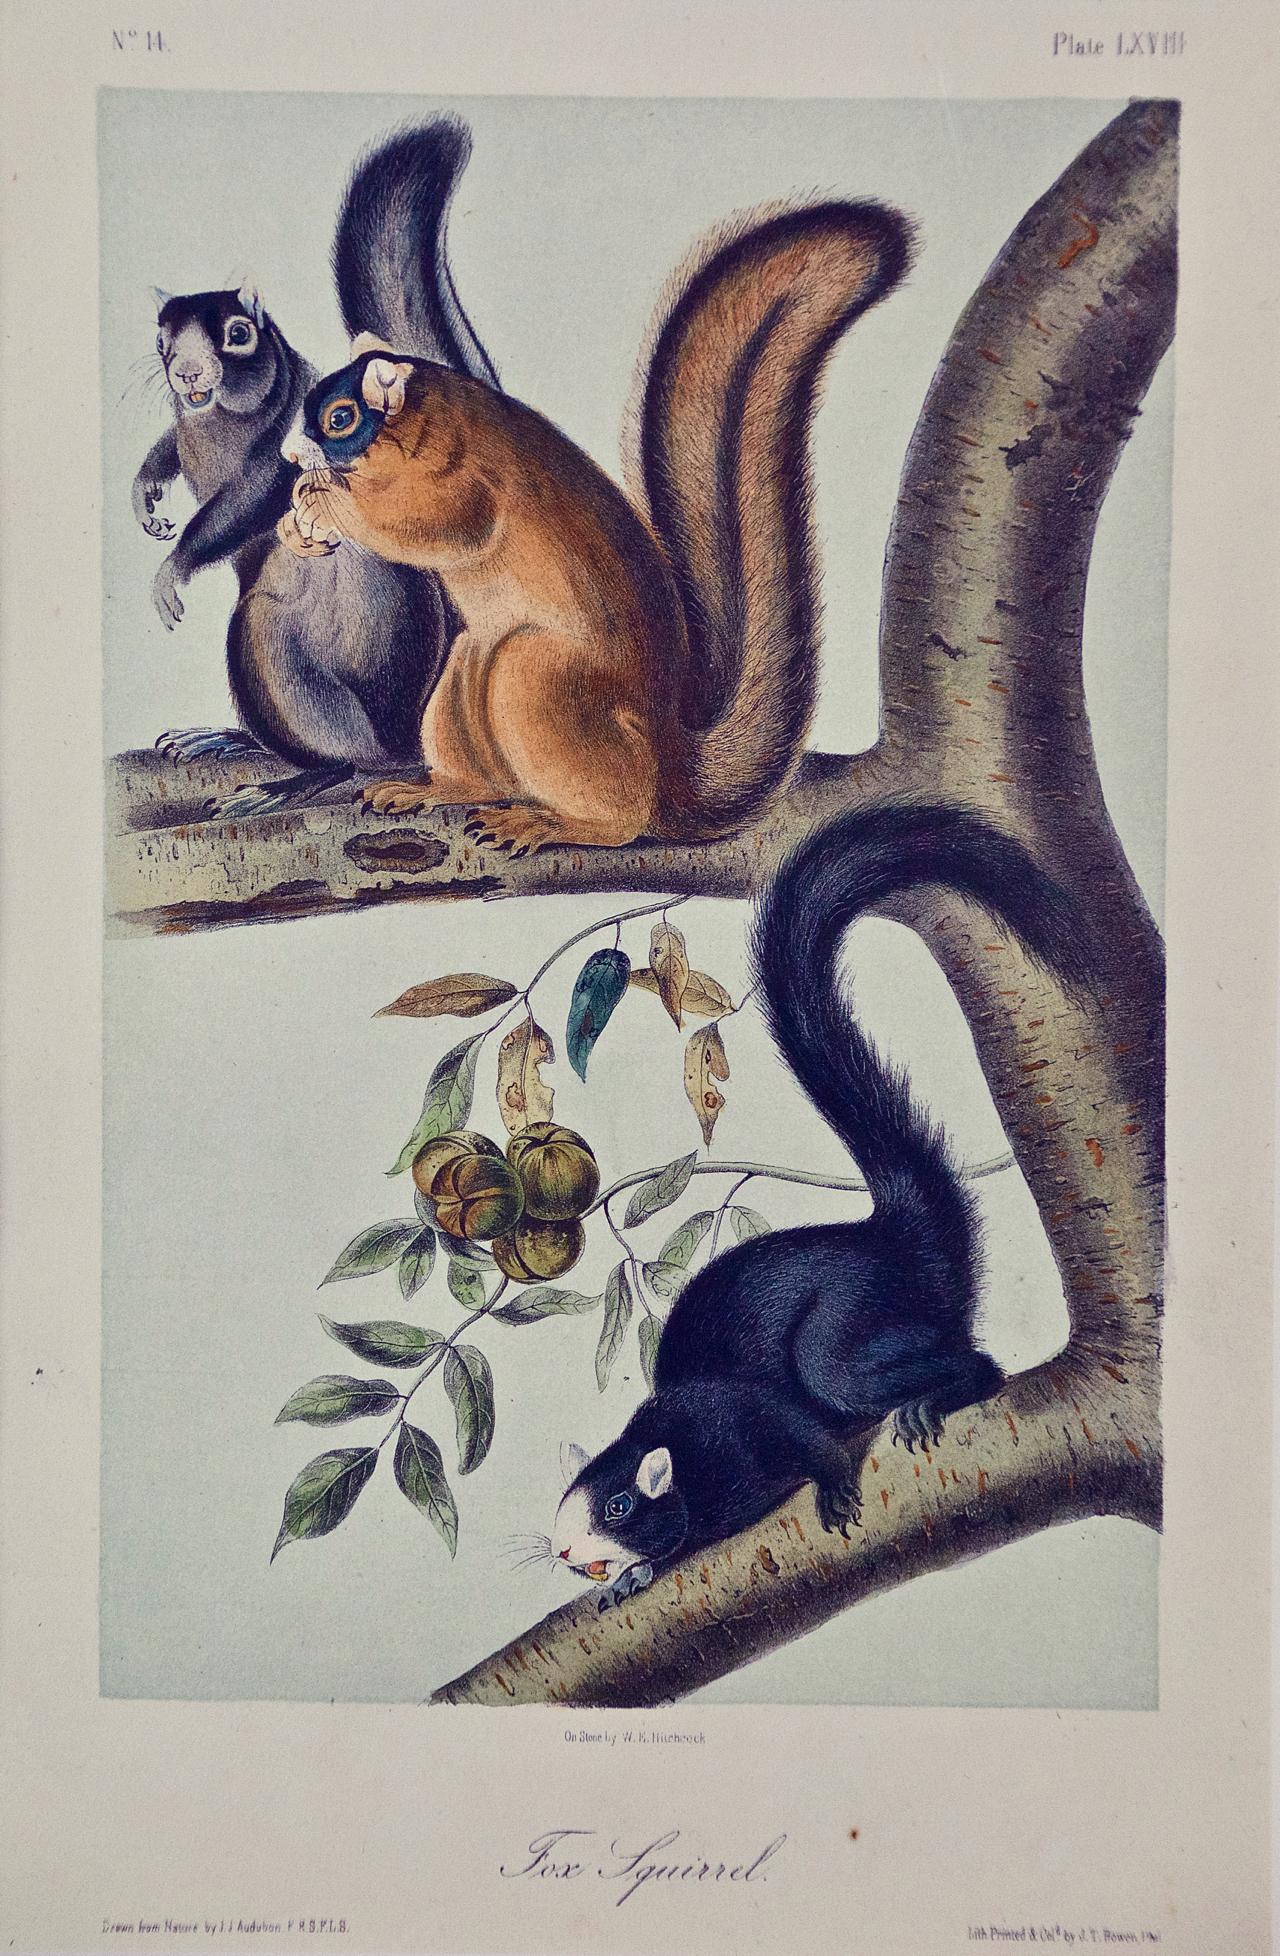 Fox Squirrel: An Original 19th Century Audubon Hand-colored Lithograph - Print by John James Audubon